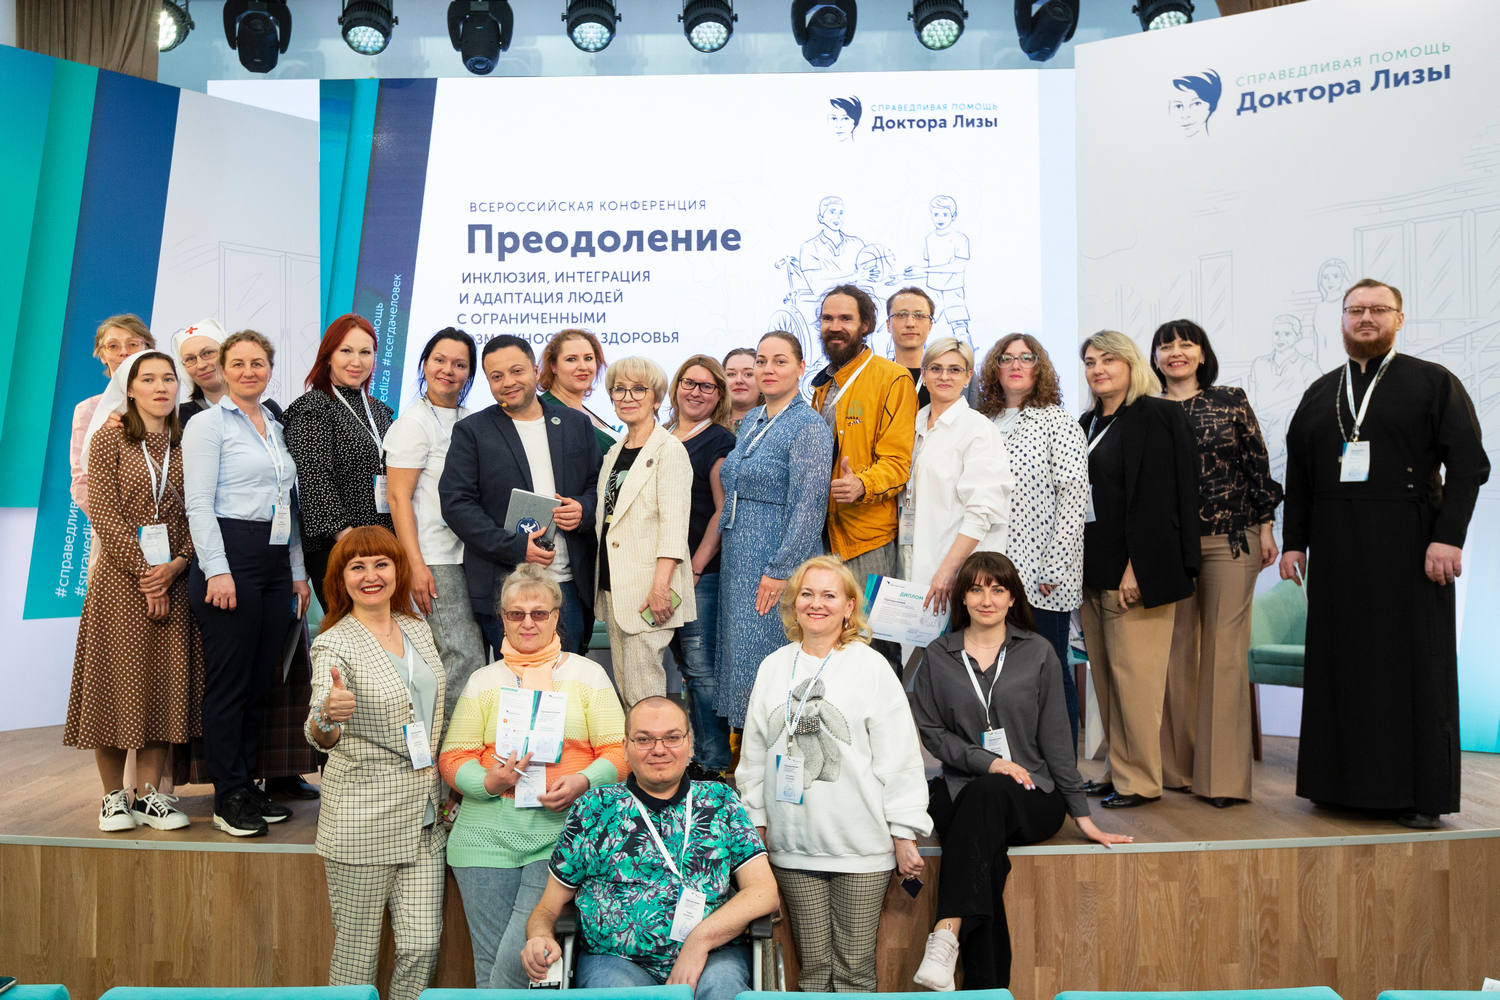 24-25 апреля в Москве состоялась Всероссийская конференция «Преодоление. Инклюзия, интеграция и адаптация людей с ограниченными возможностями здоровья»